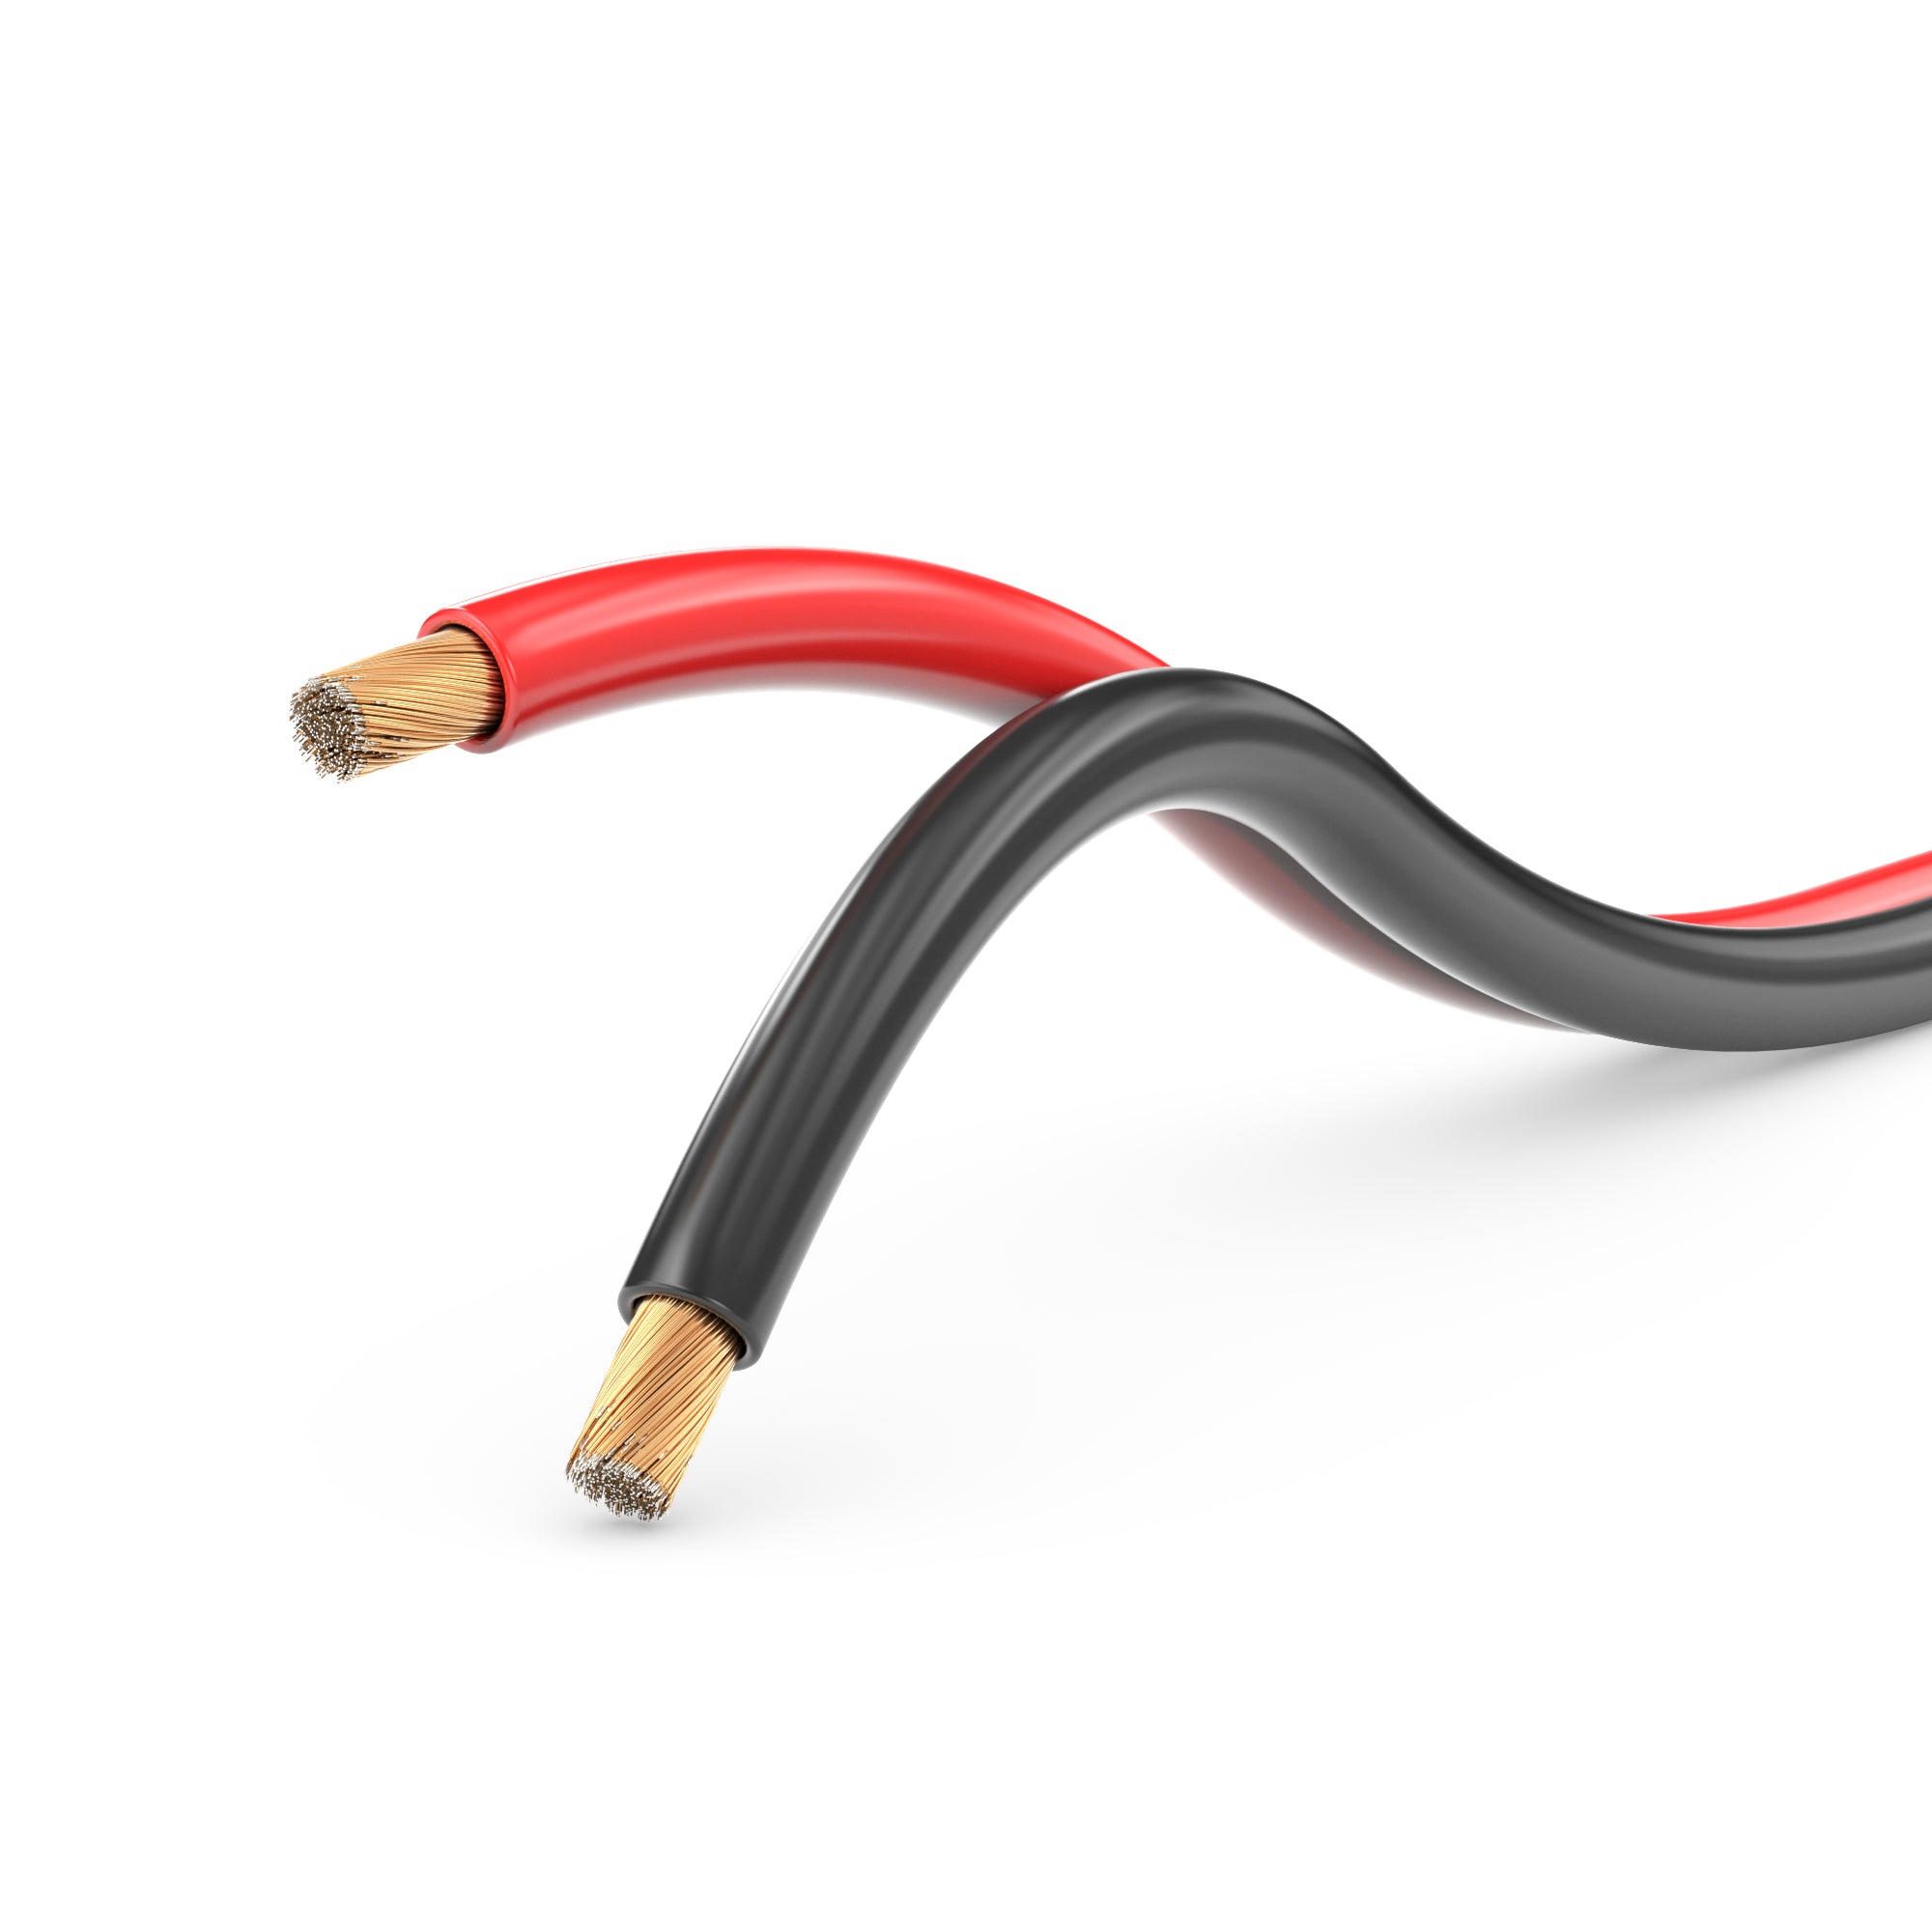 Lautsprecherkabel Audio Kabel Boxenkabel 100% CCA 30m 2x1,5mm² rot / schwarz